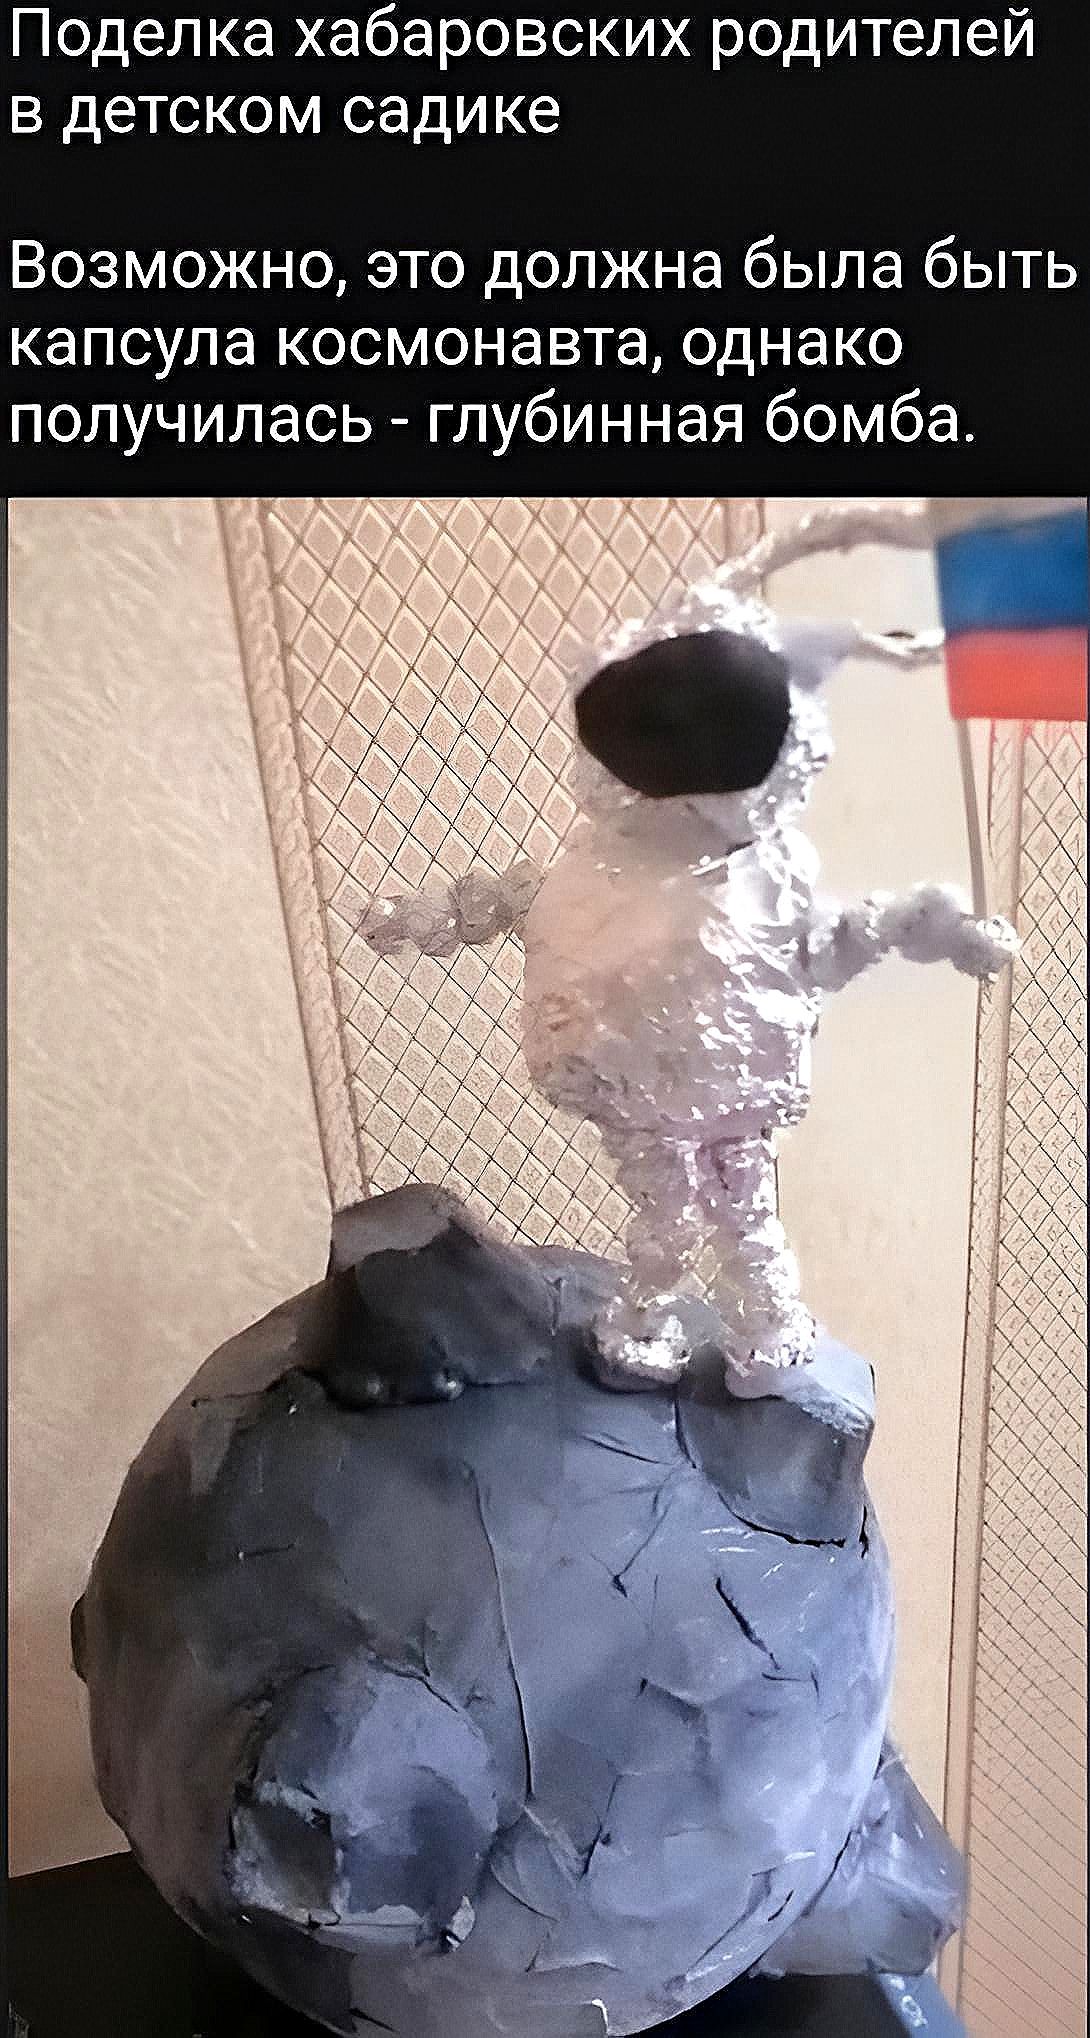 Поделка хабаровских родителей в детском садике Возможно это должна была быть капсула космонавта однако получилась глубинная бомба